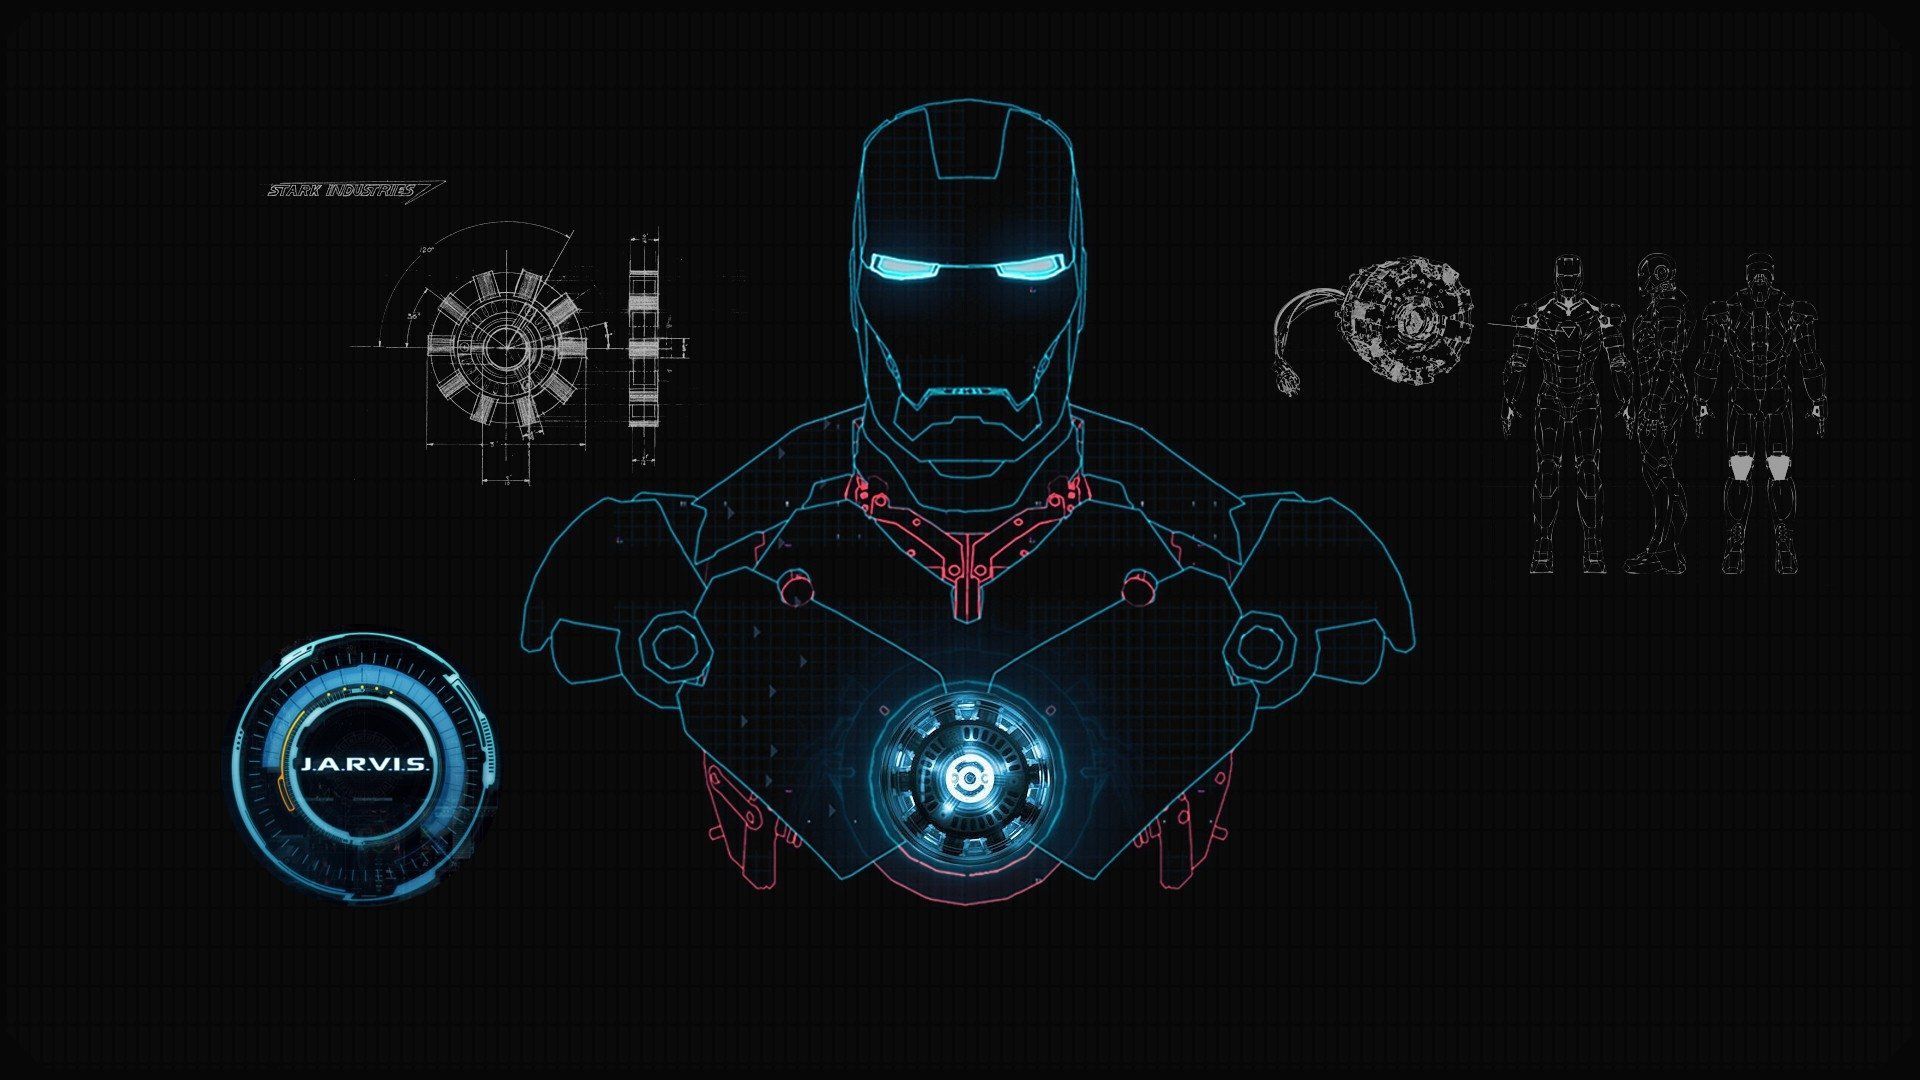 Hình nền Iron Man cao cấp sẽ khiến bạn phát cuồng khi ngắm nhìn, với những thiết kế rực rỡ, màu sắc trung thực, tạo nên một không gian sống động và thú vị. Đừng bỏ lỡ cơ hội để sở hữu một hình nền Iron Man cao cấp tuyệt đẹp như thế này.